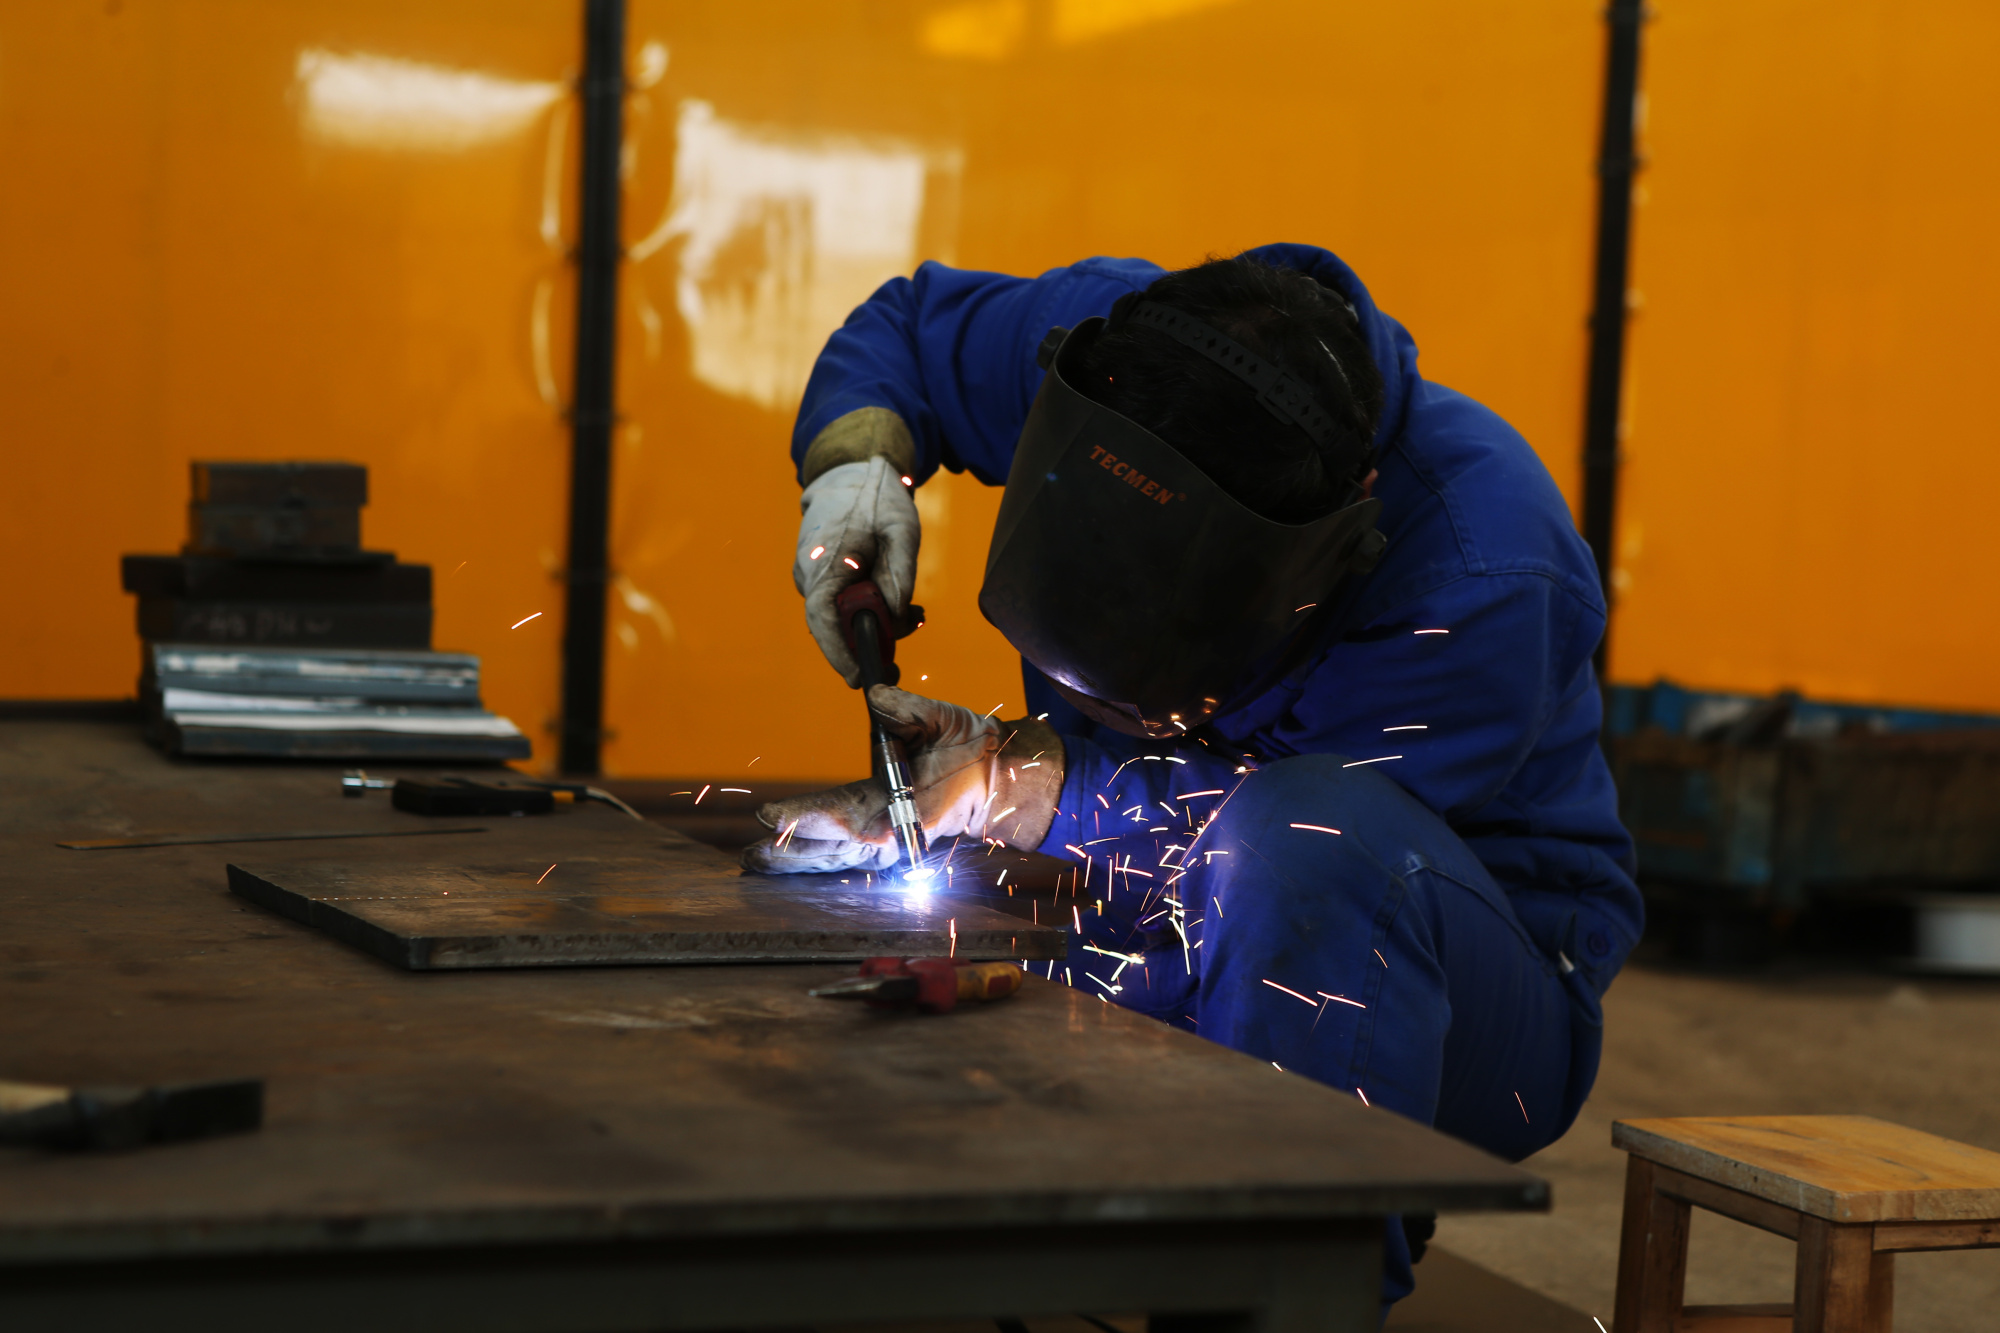 △江苏南京钢铁股份有限公司的工人正在进行焊接作业。